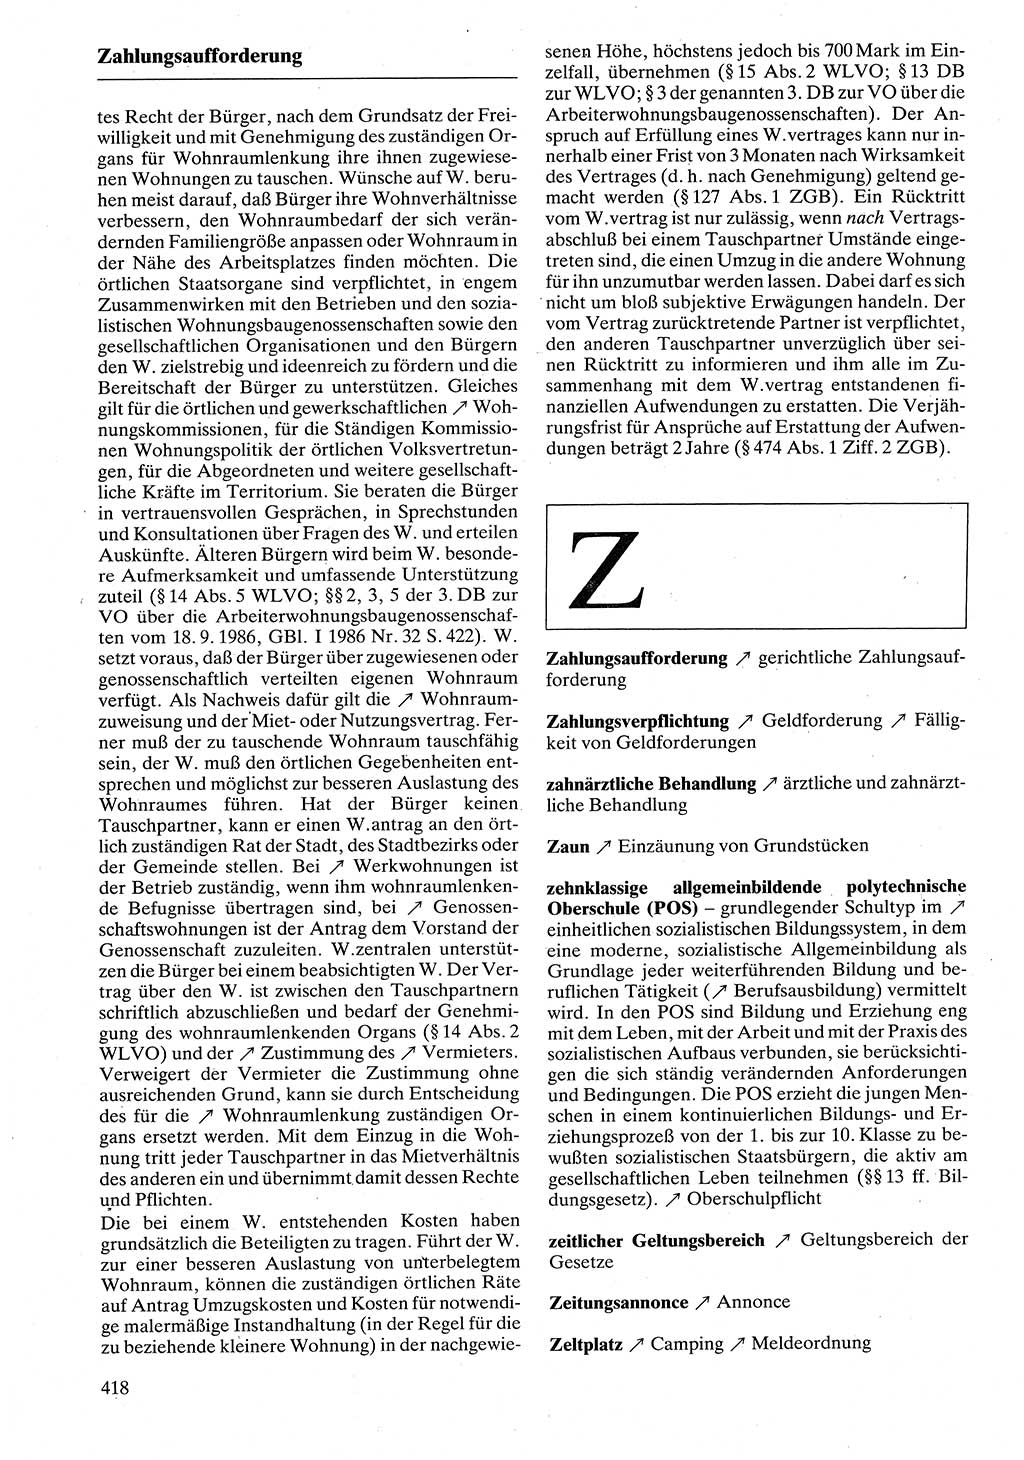 Rechtslexikon [Deutsche Demokratische Republik (DDR)] 1988, Seite 418 (Rechtslex. DDR 1988, S. 418)